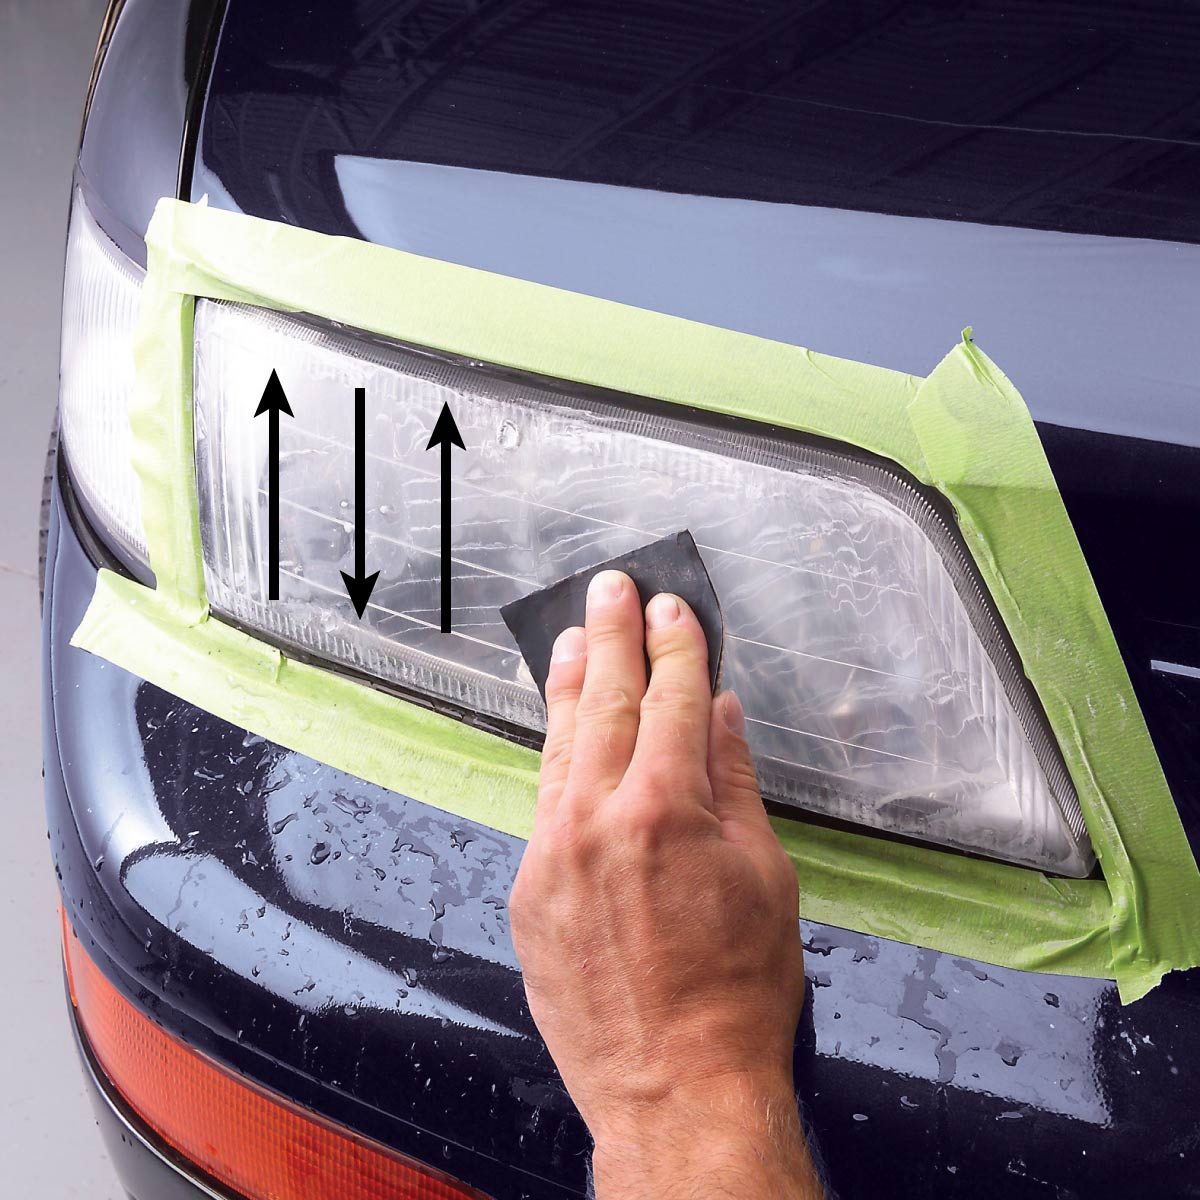 DIY Headlight Restore using clear coat - Maintenance/Repairs - Car